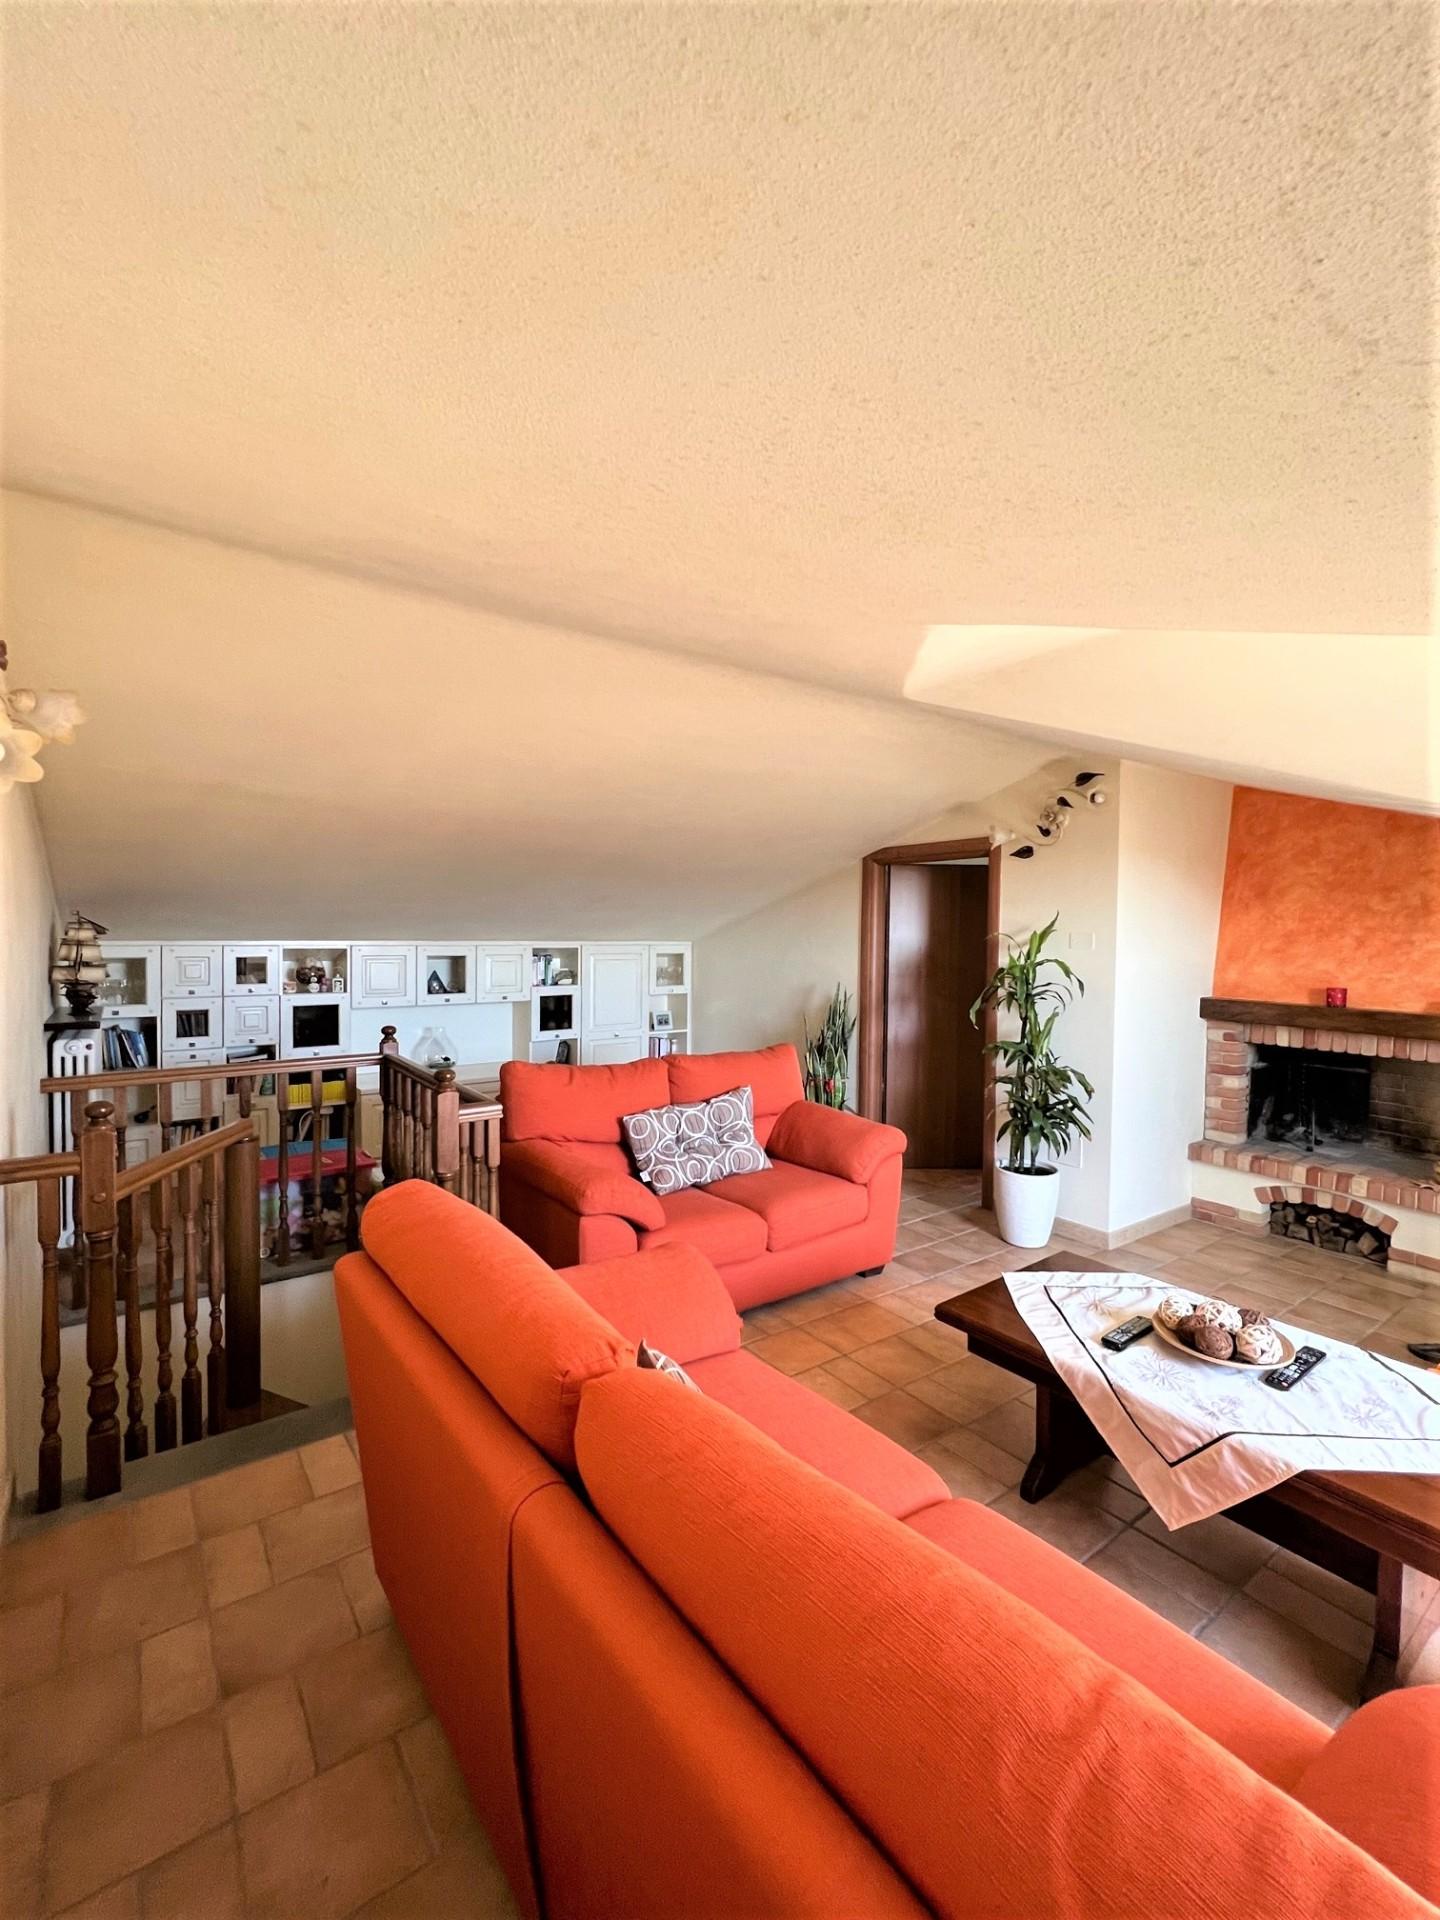 Appartamento in vendita a Castelfranco di Sotto, 5 locali, prezzo € 165.000 | PortaleAgenzieImmobiliari.it